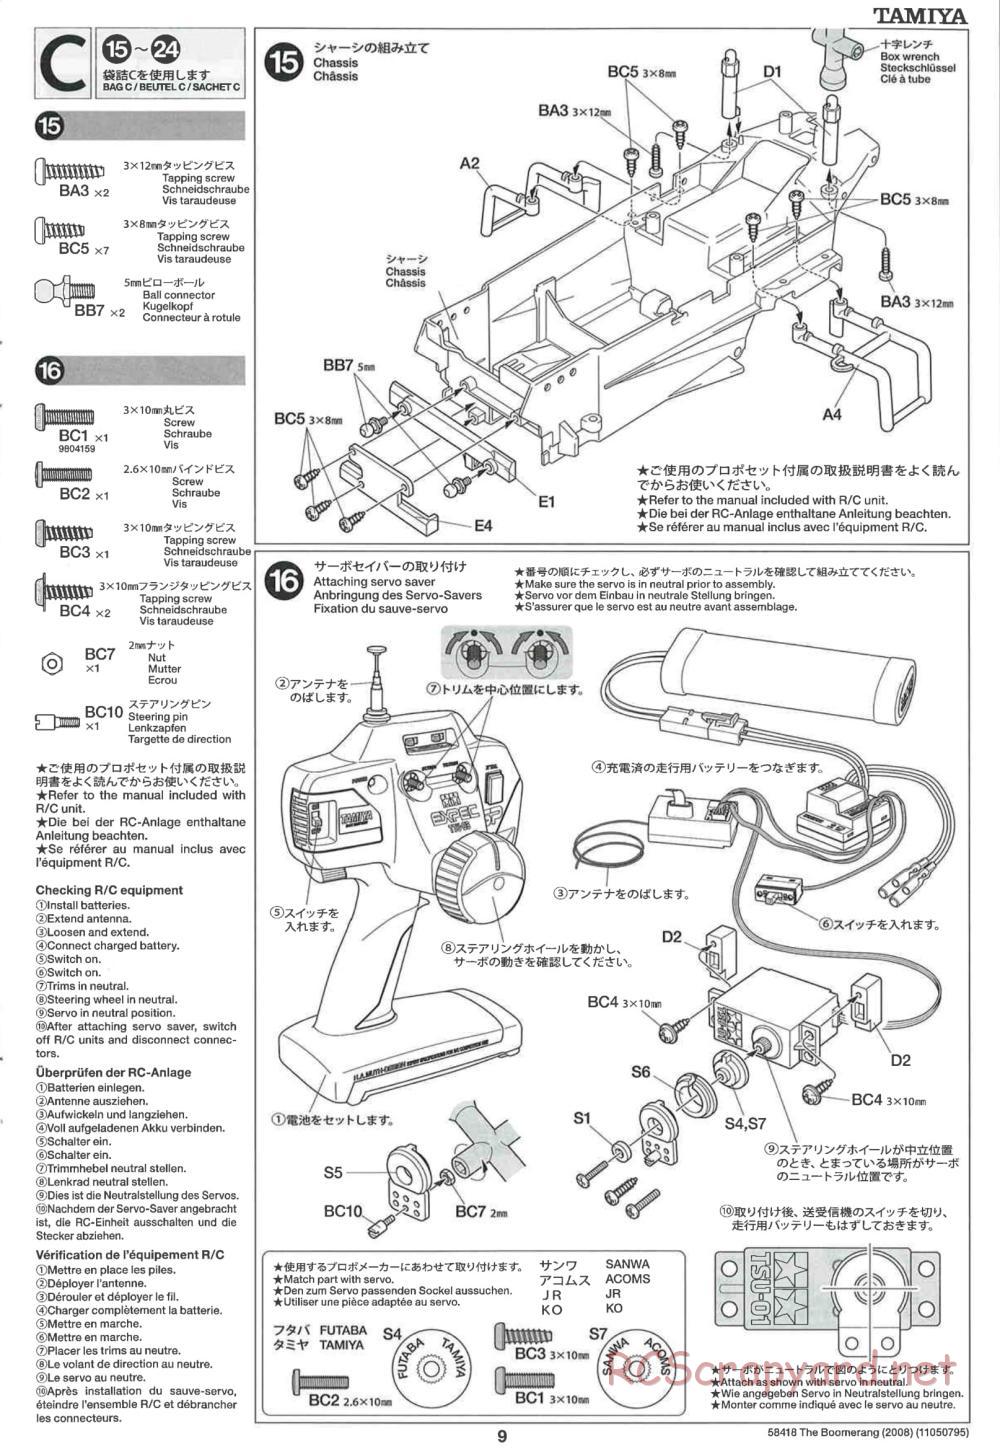 Tamiya - The Boomerang 2008 Chassis - Manual - Page 9